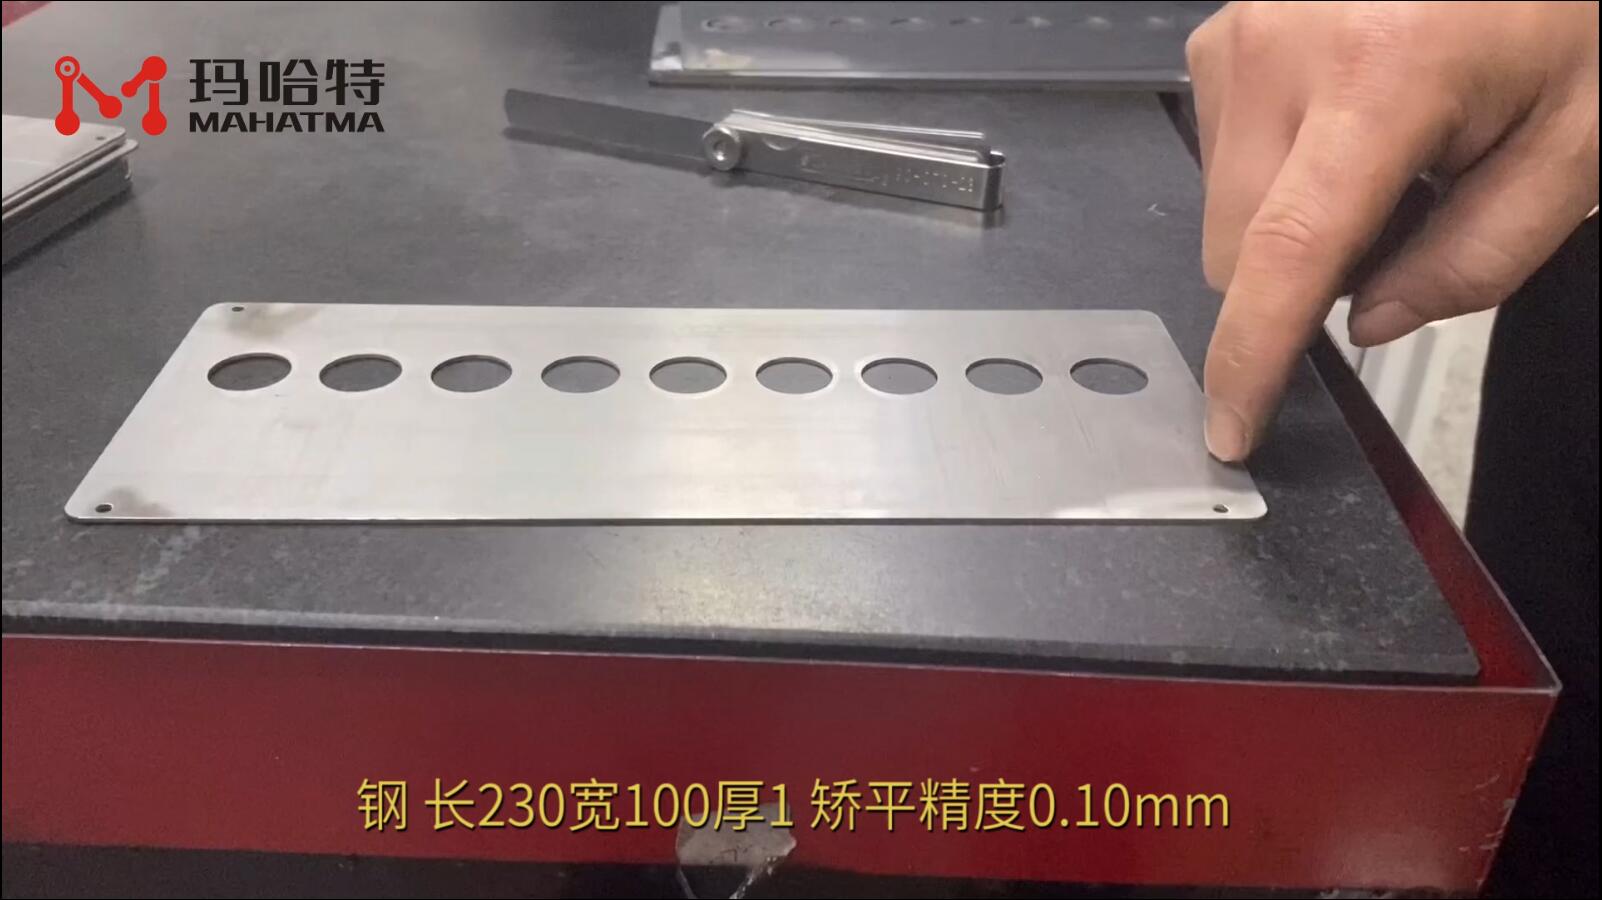 钢 MHT30-400 长方形 长230宽100厚1 矫平精度0.10mm